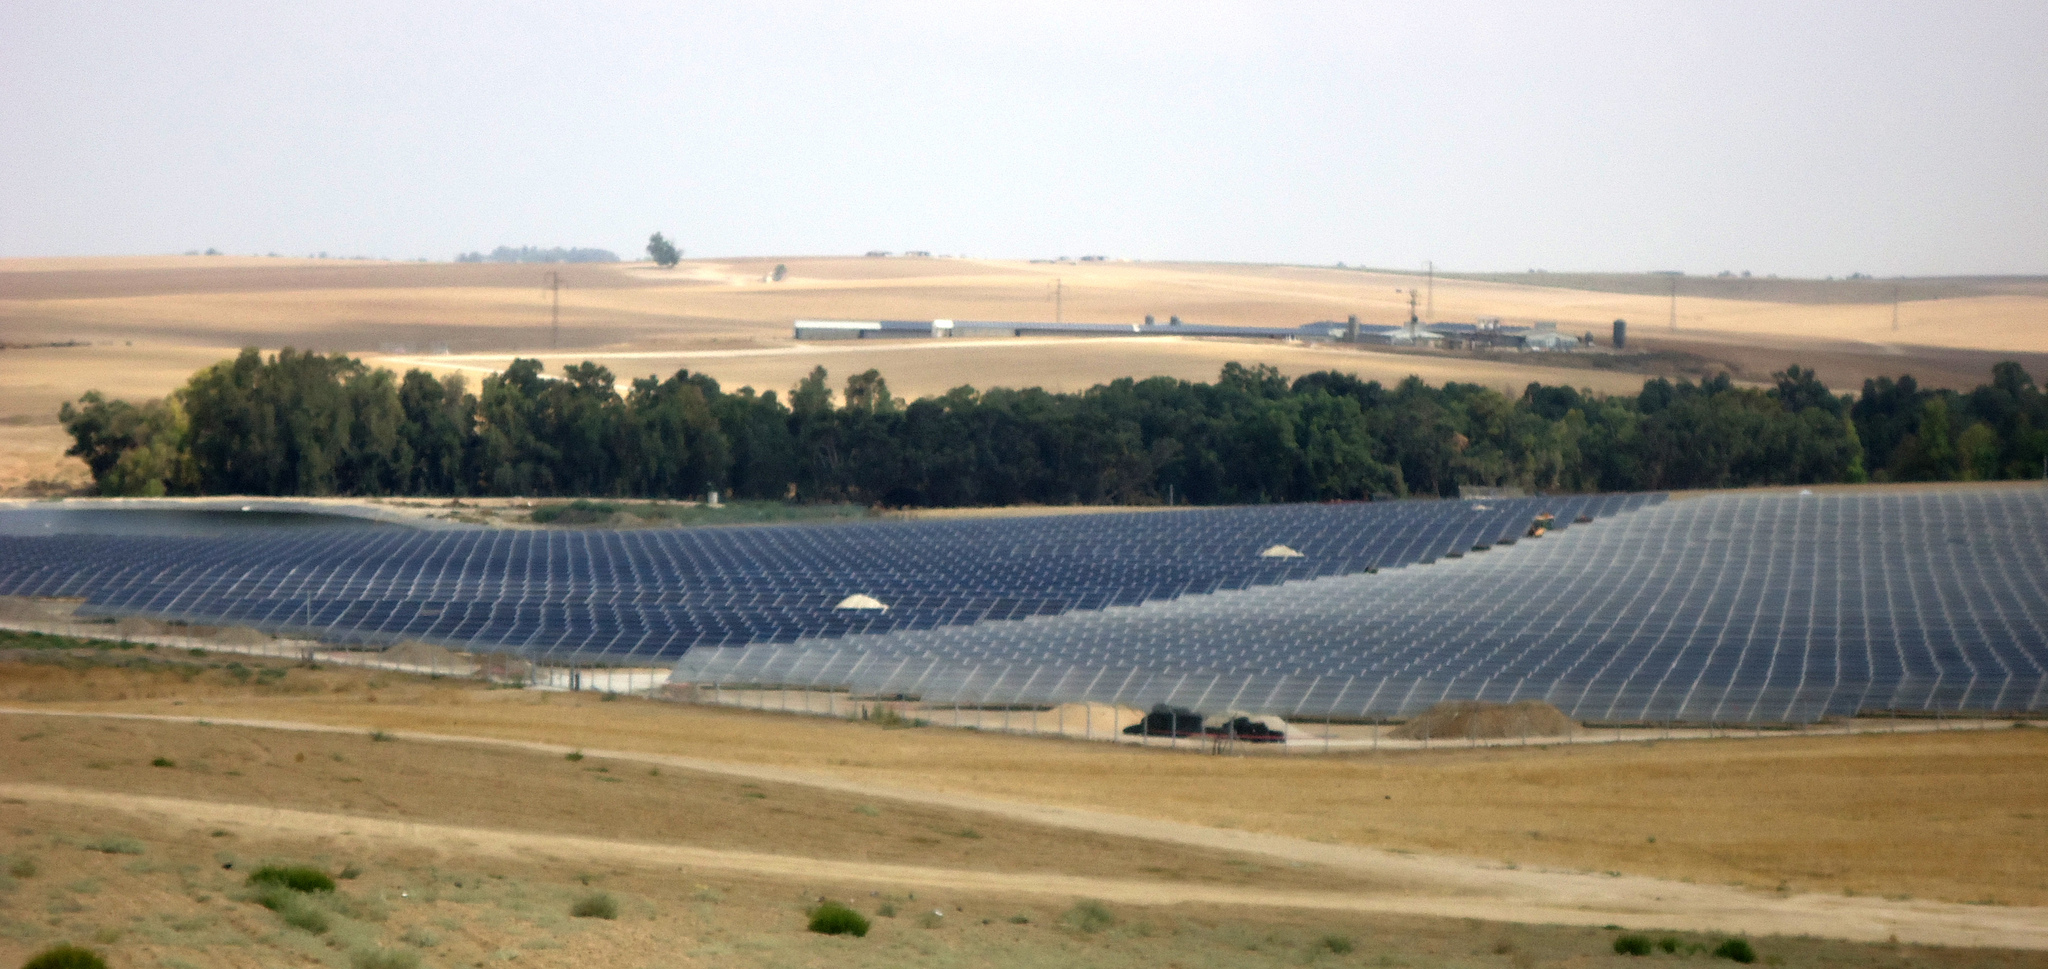 Ketura sun solar field by Arava Power Company